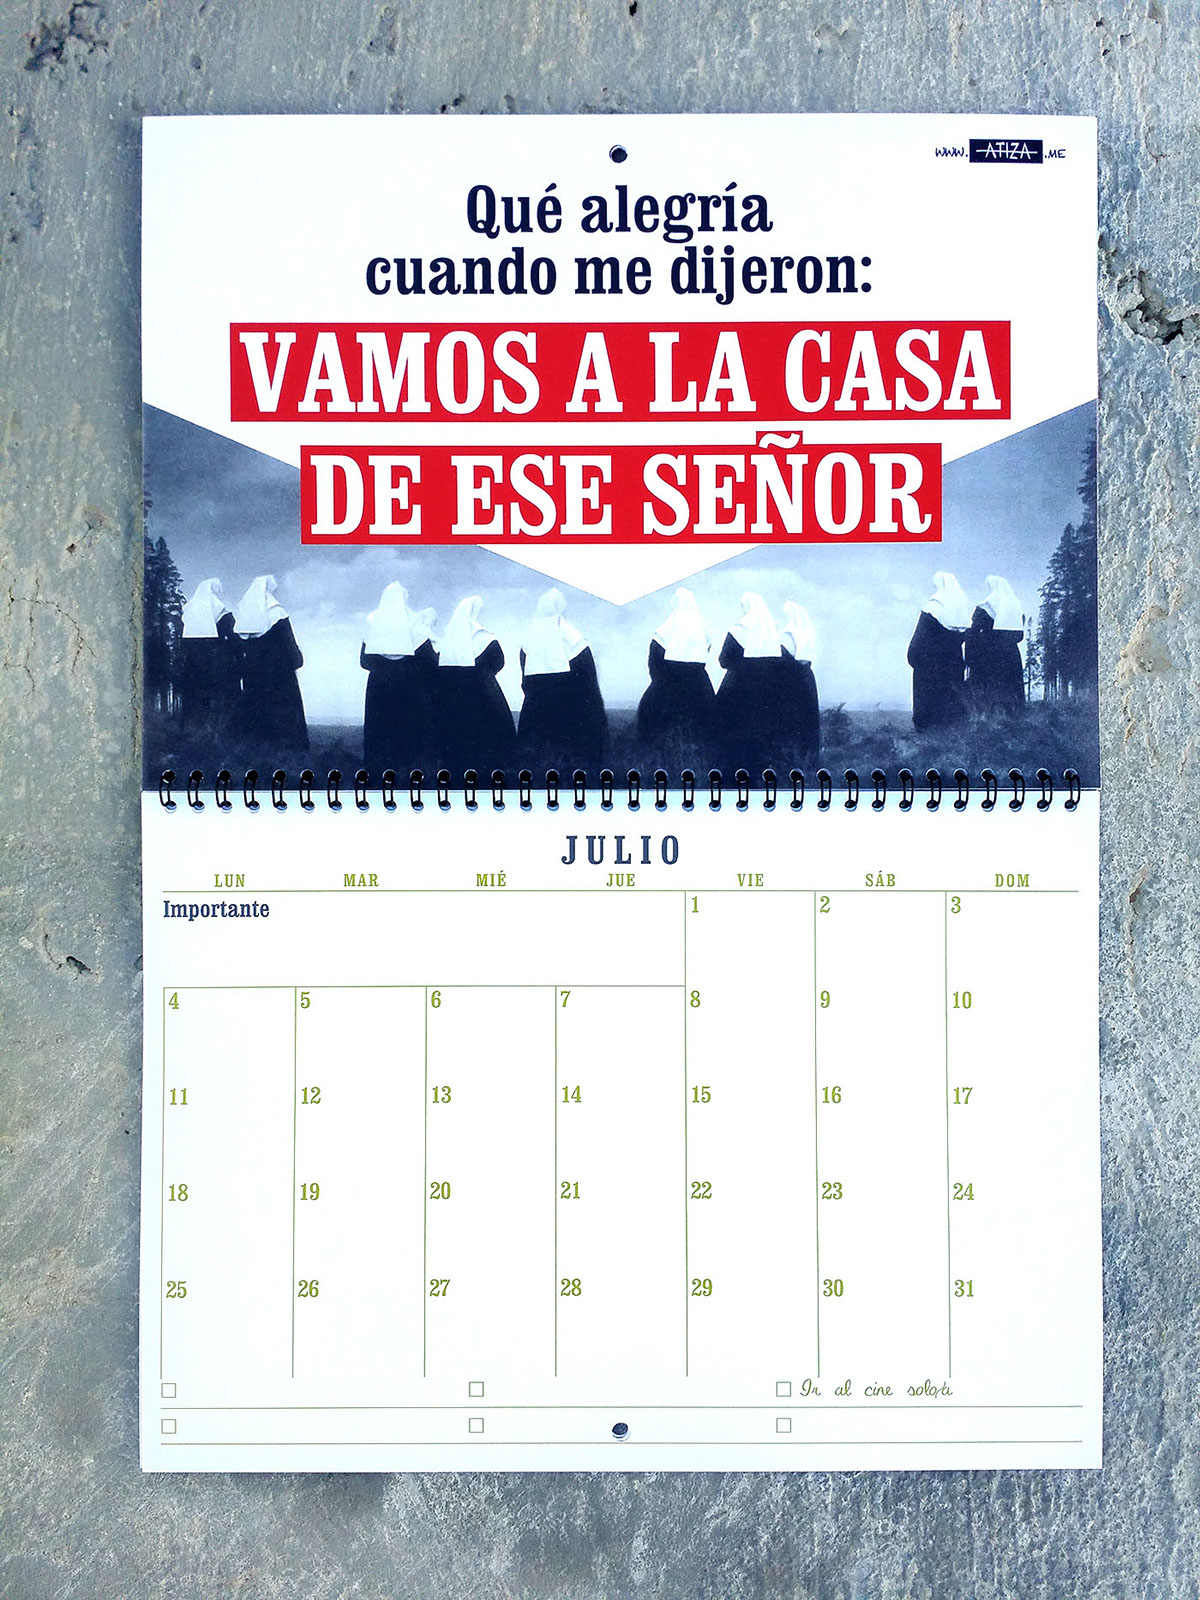 calendario calendar confesiones gráficas humor confesiones Gráficas calendario2016 calendar2016 vintage Clarendon